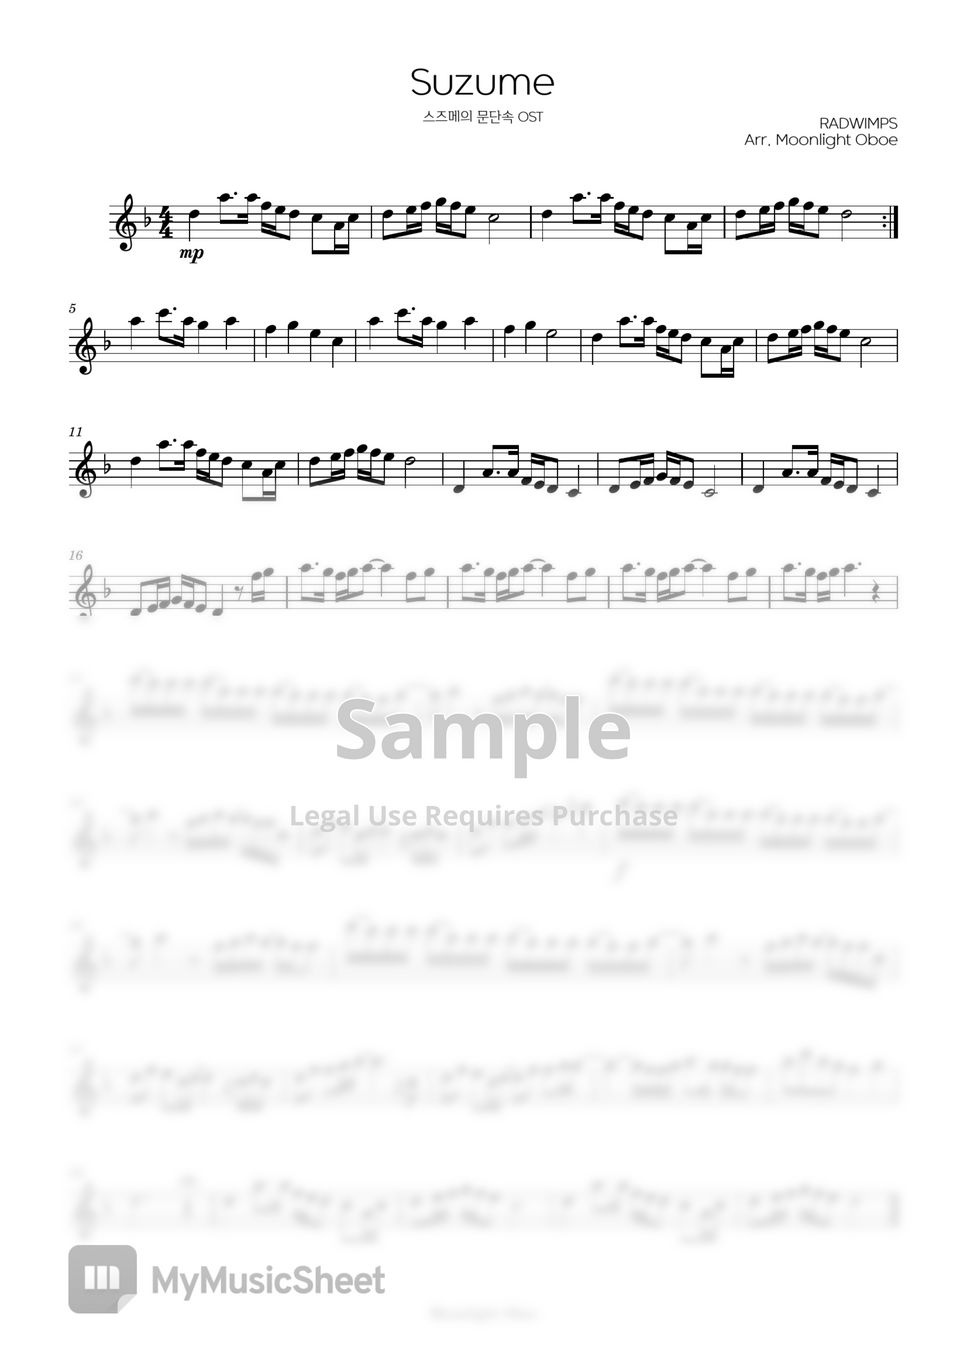 RADWIMPS - Suzume (Oboe sheet) by Moonlight Oboe